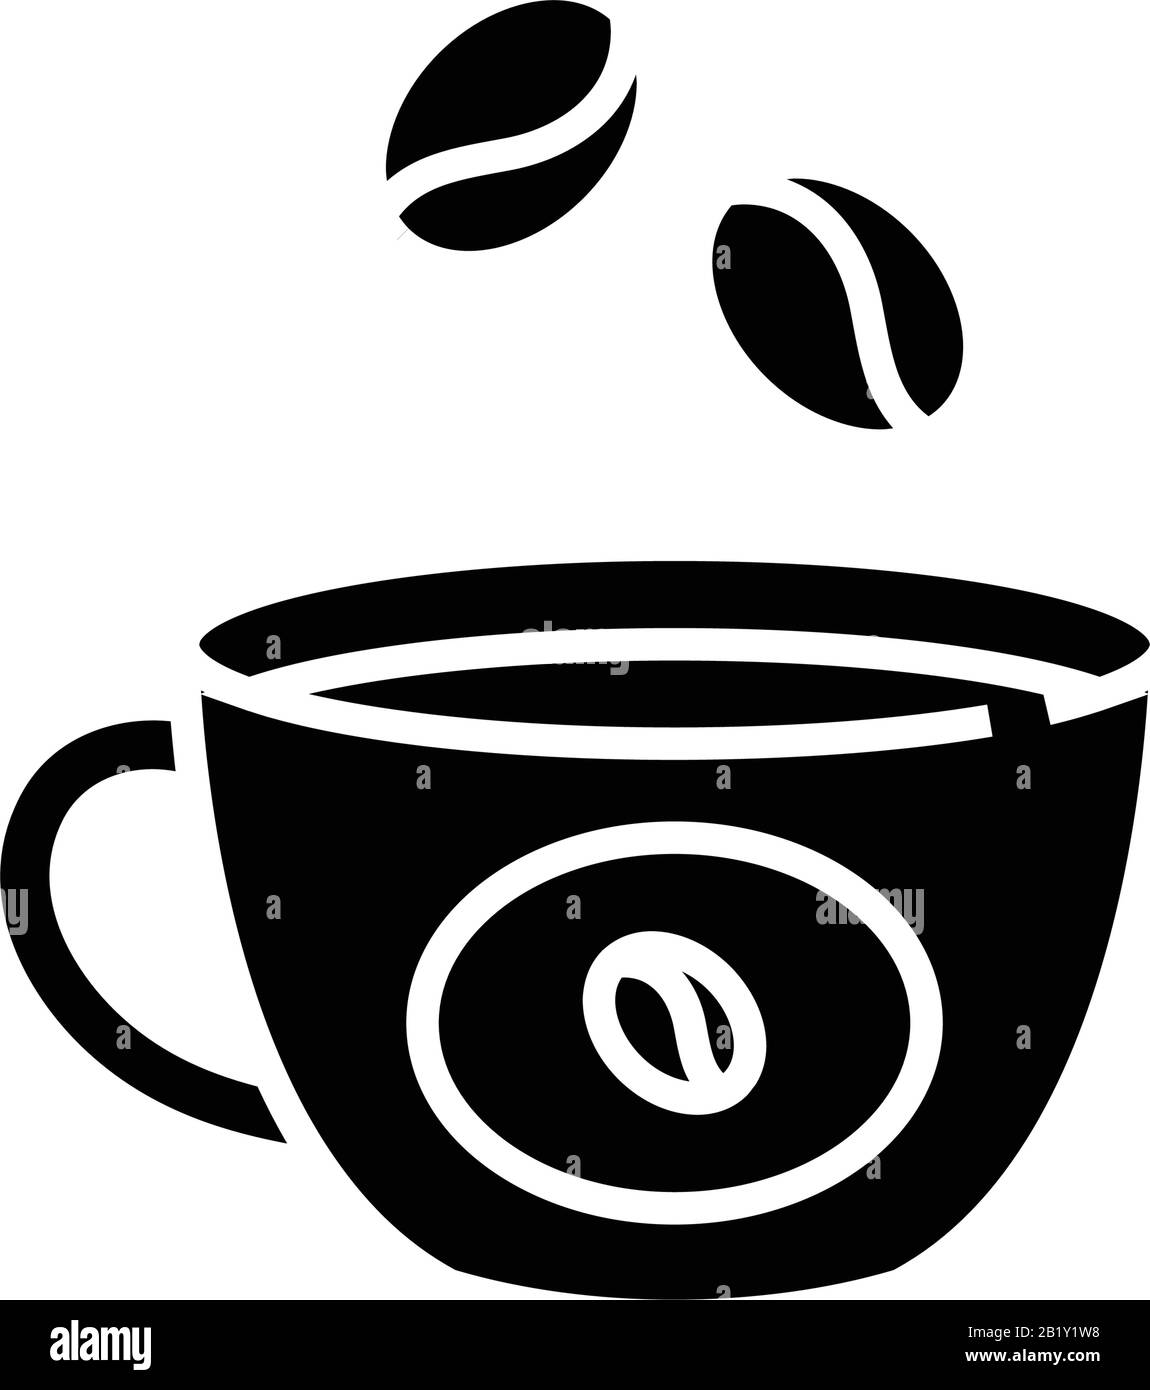 https://c8.alamy.com/comp/2B1Y1W8/coffe-cup-black-icon-concept-illustration-vector-flat-symbol-glyph-sign-2B1Y1W8.jpg